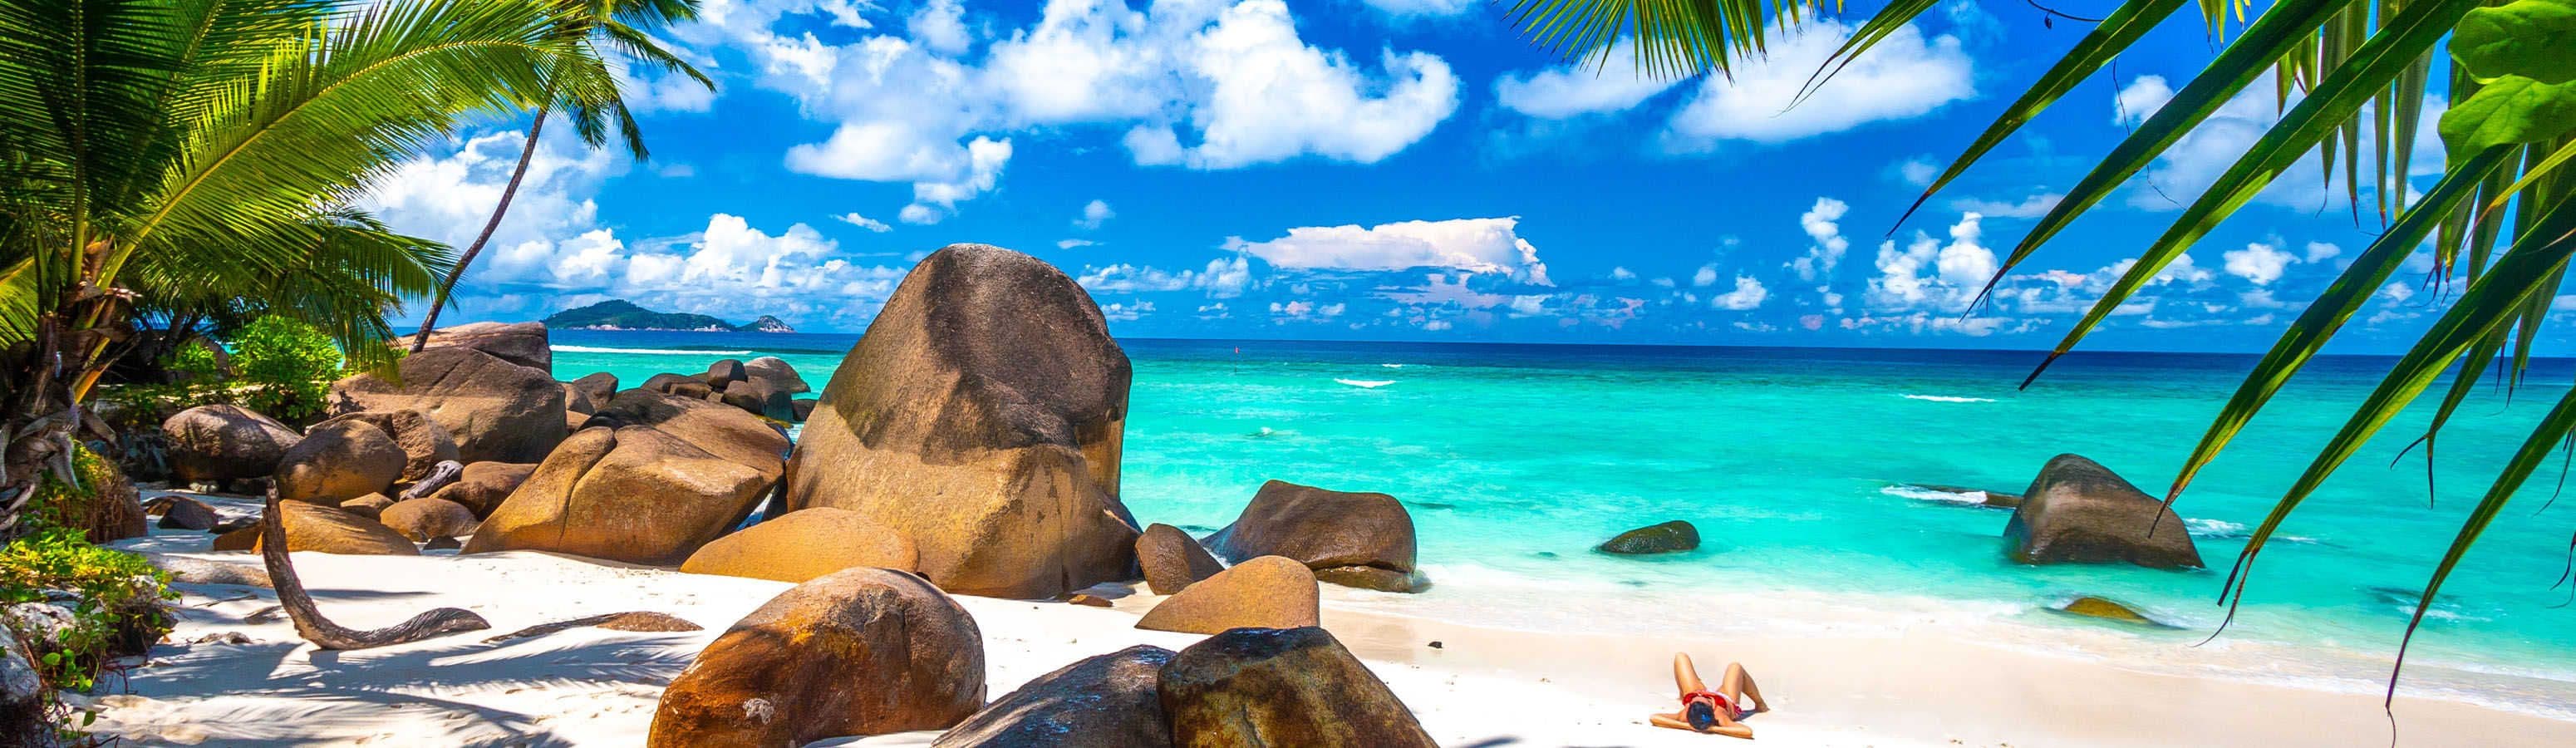 Seychelles - paradiso in terra